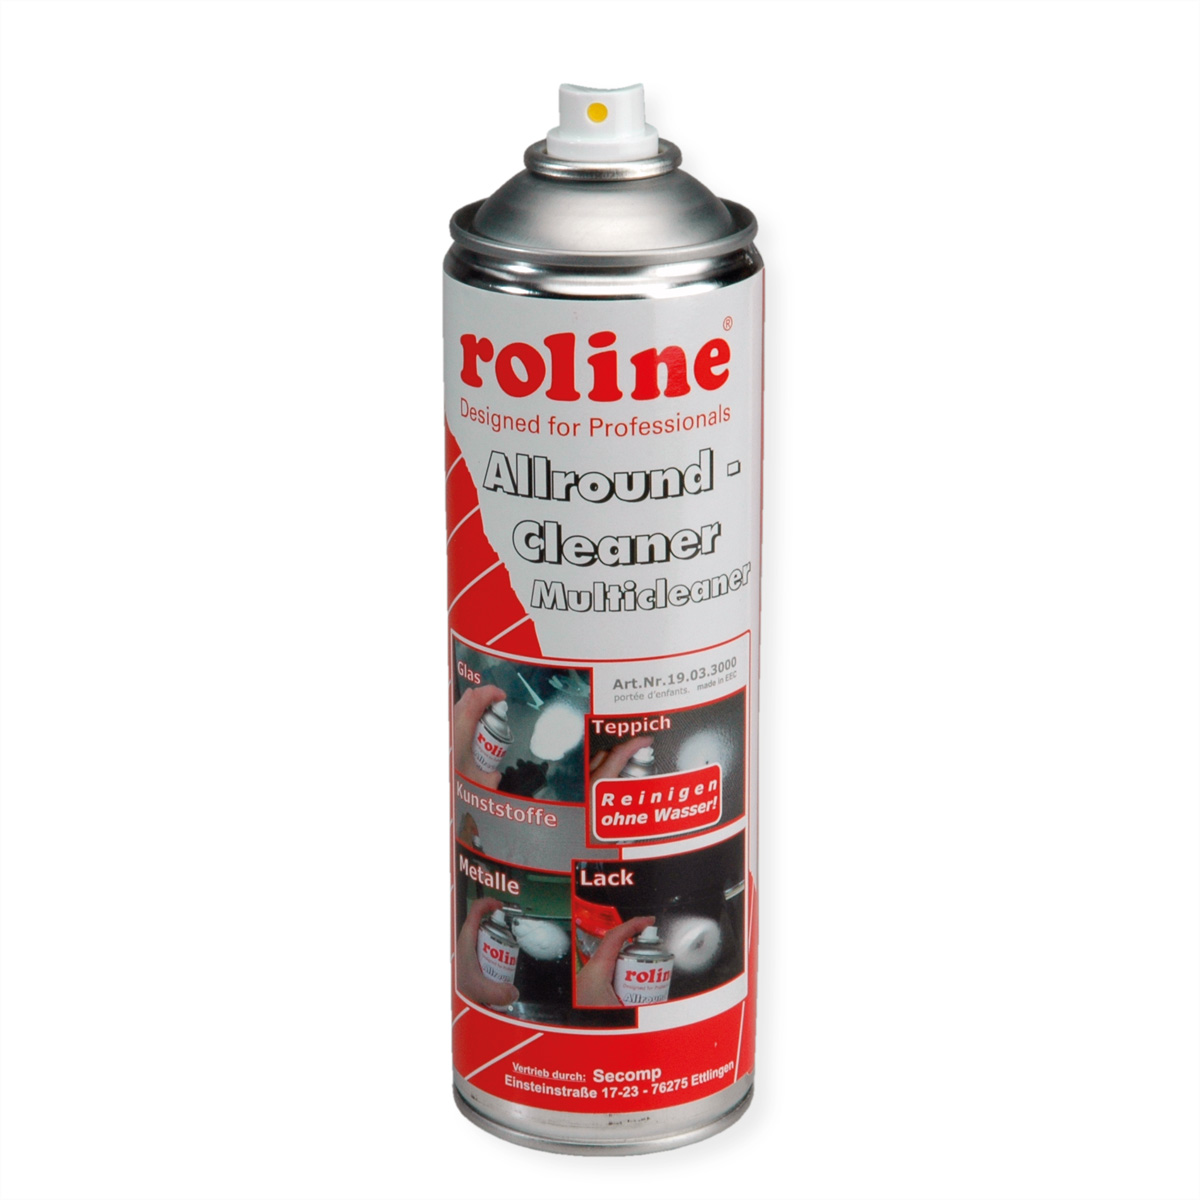 ROLINE Allround-Cleaner Universal-Reinigung Aerosol mehrfarbig